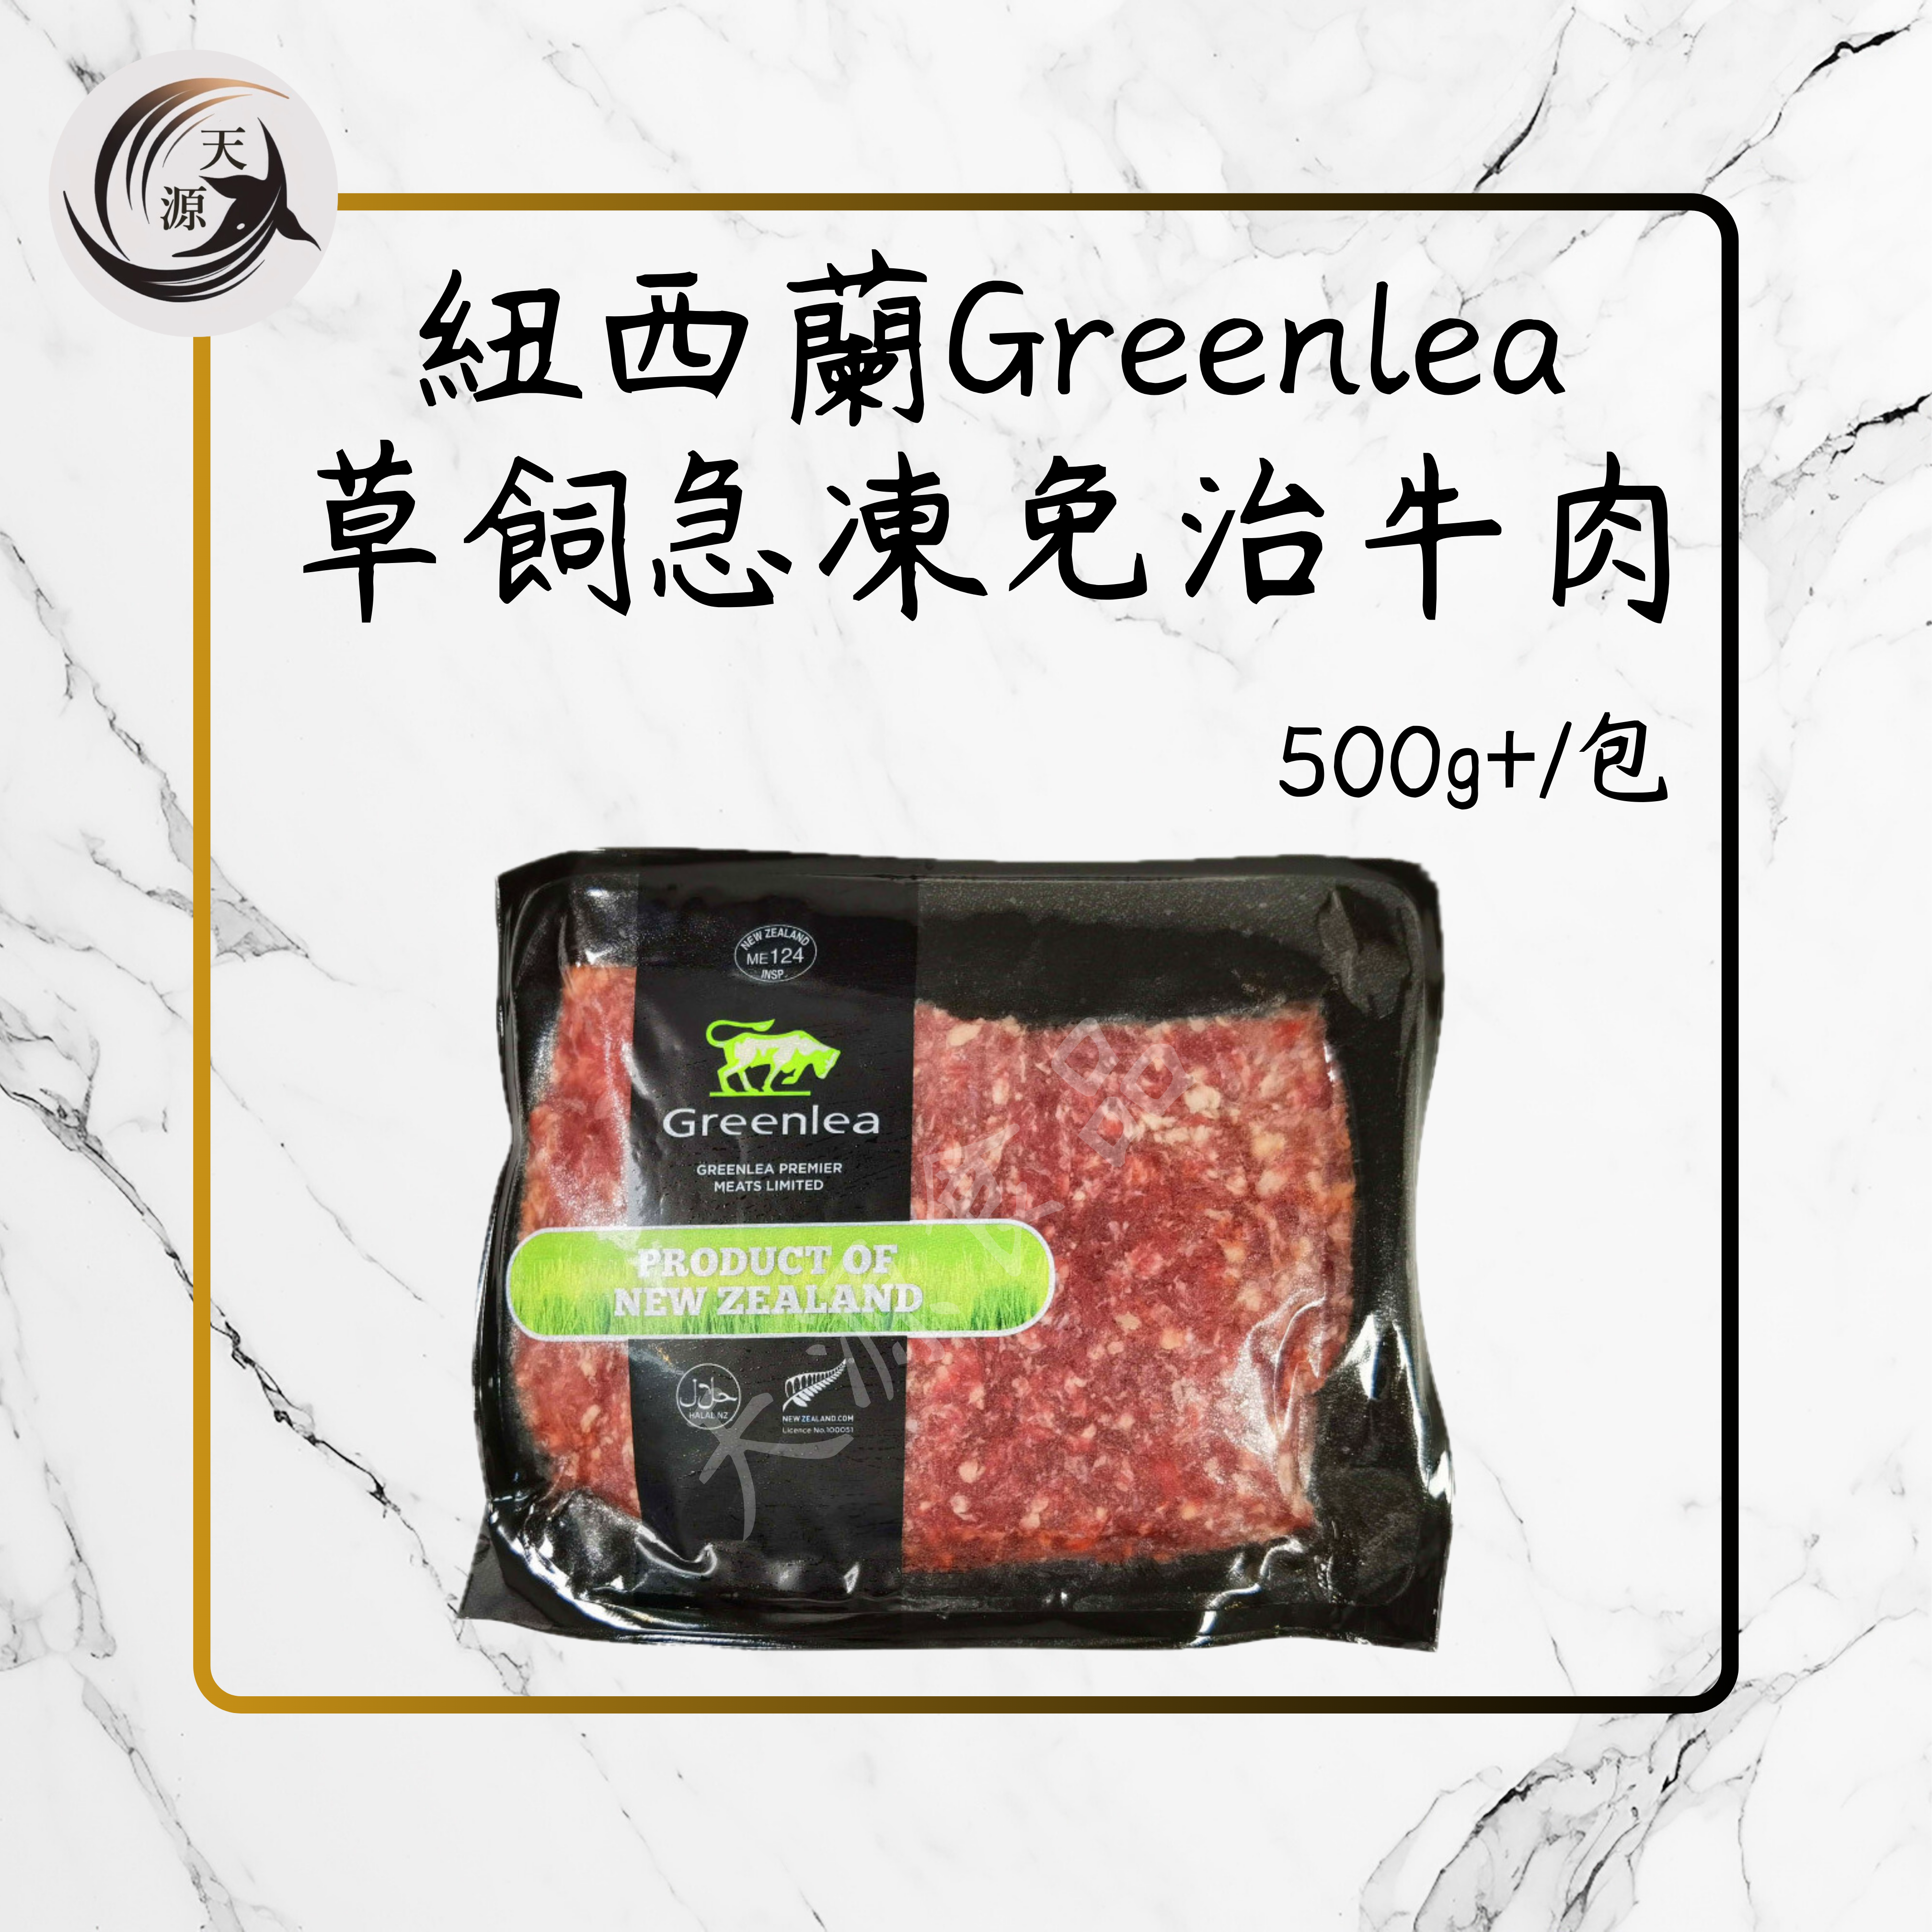 New Zealand Greenlea grass-fed frozen beef